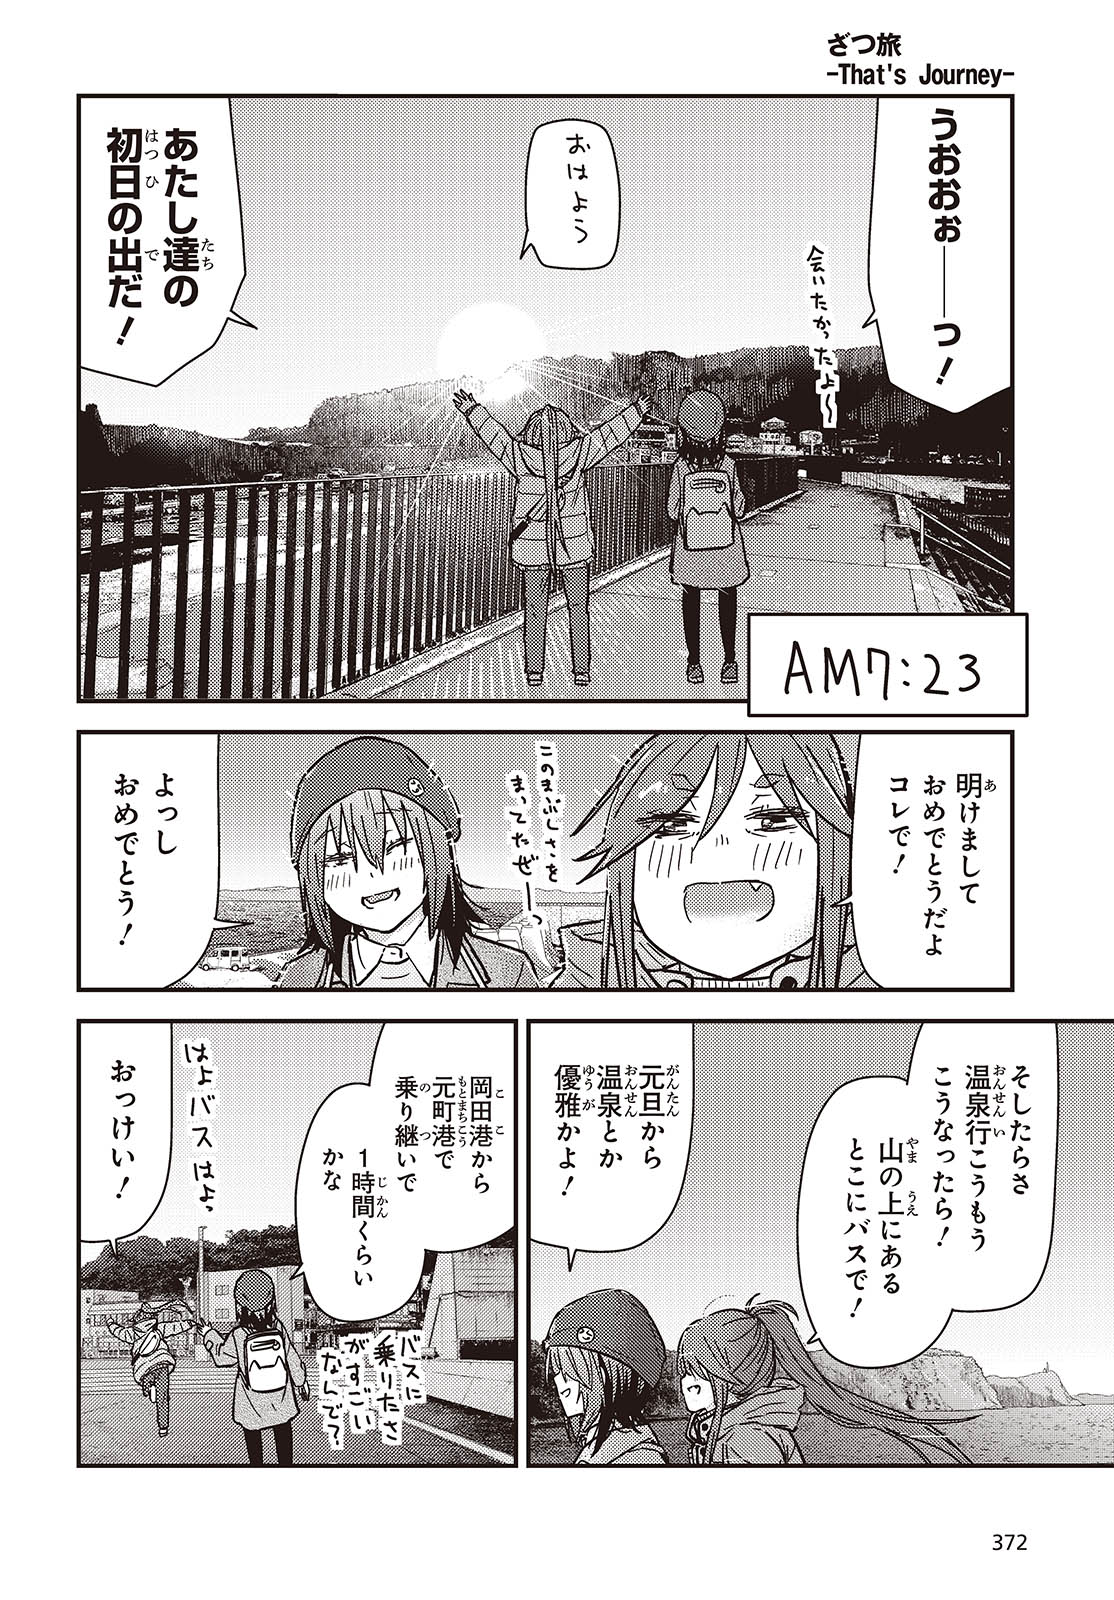 ざつ旅-That’s Journey- 第37話 - Page 16